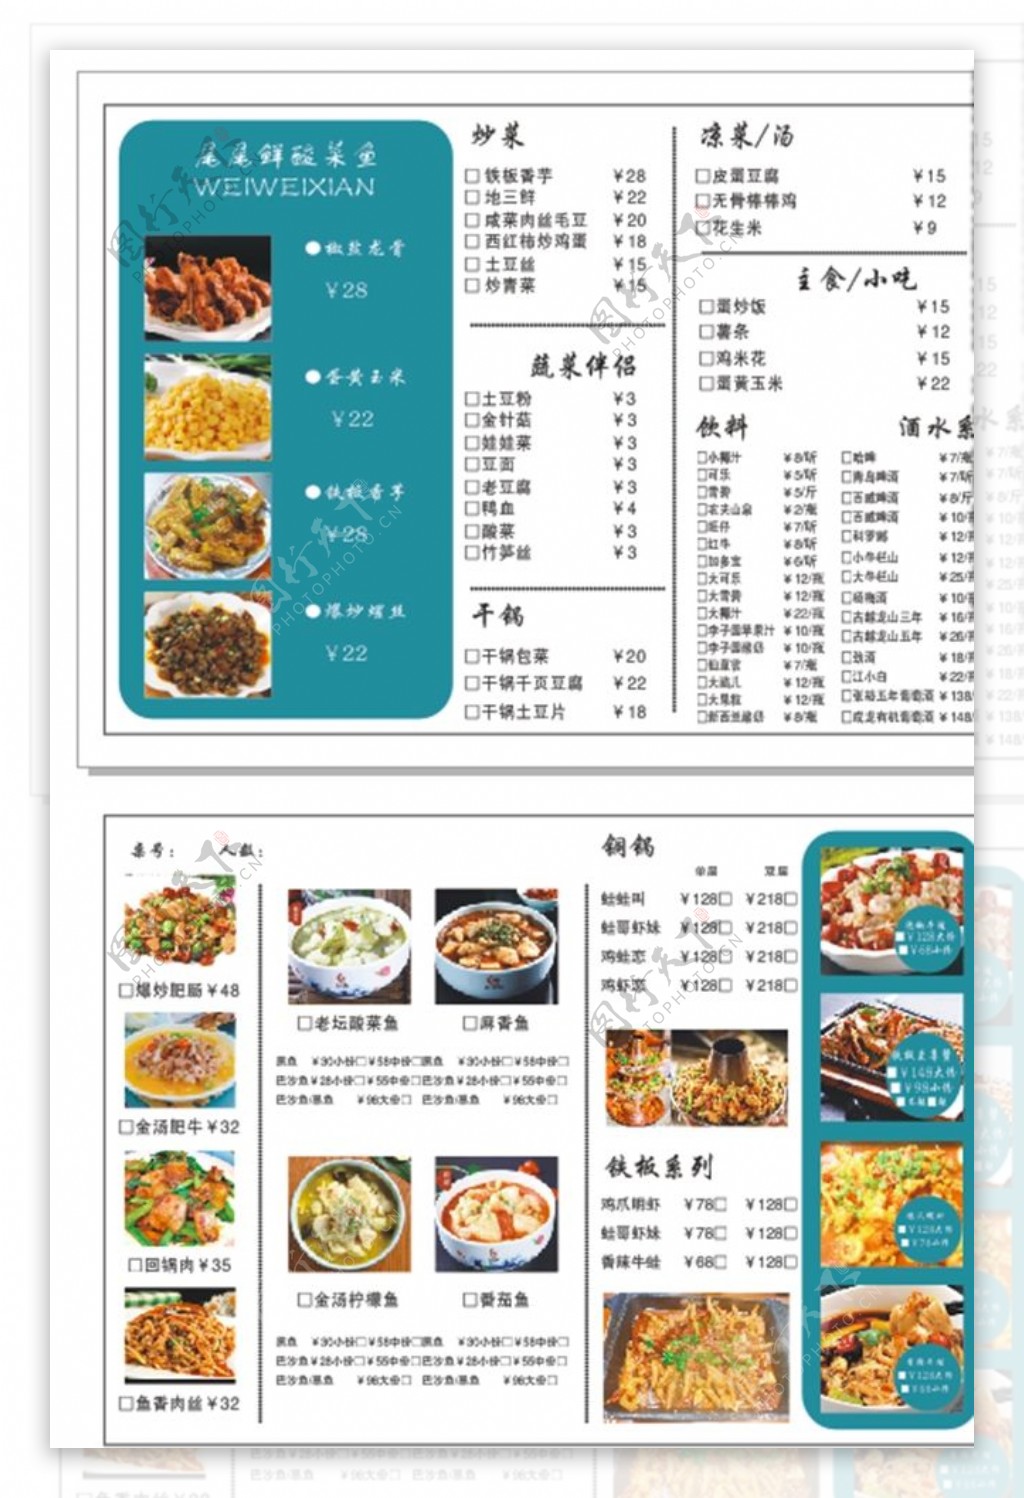 菜单饭店价格单价格表图片下载 - 觅知网